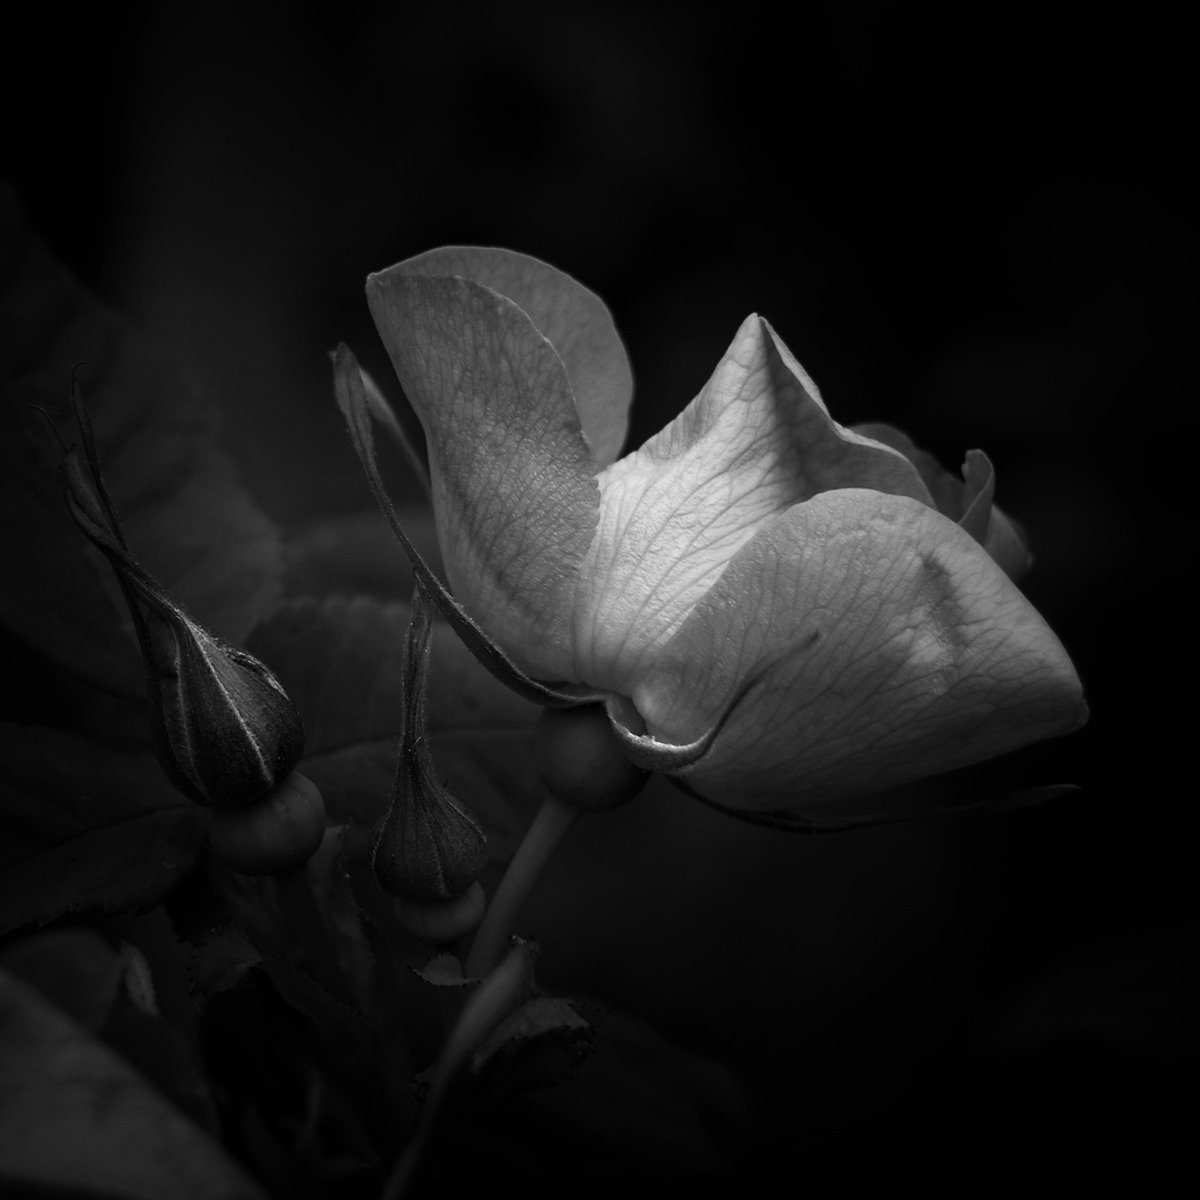 Rose on mute. #bnw_macro_flowers2 #BlackandWhiteMacro #BlackandWhitePhotography #wildflowers